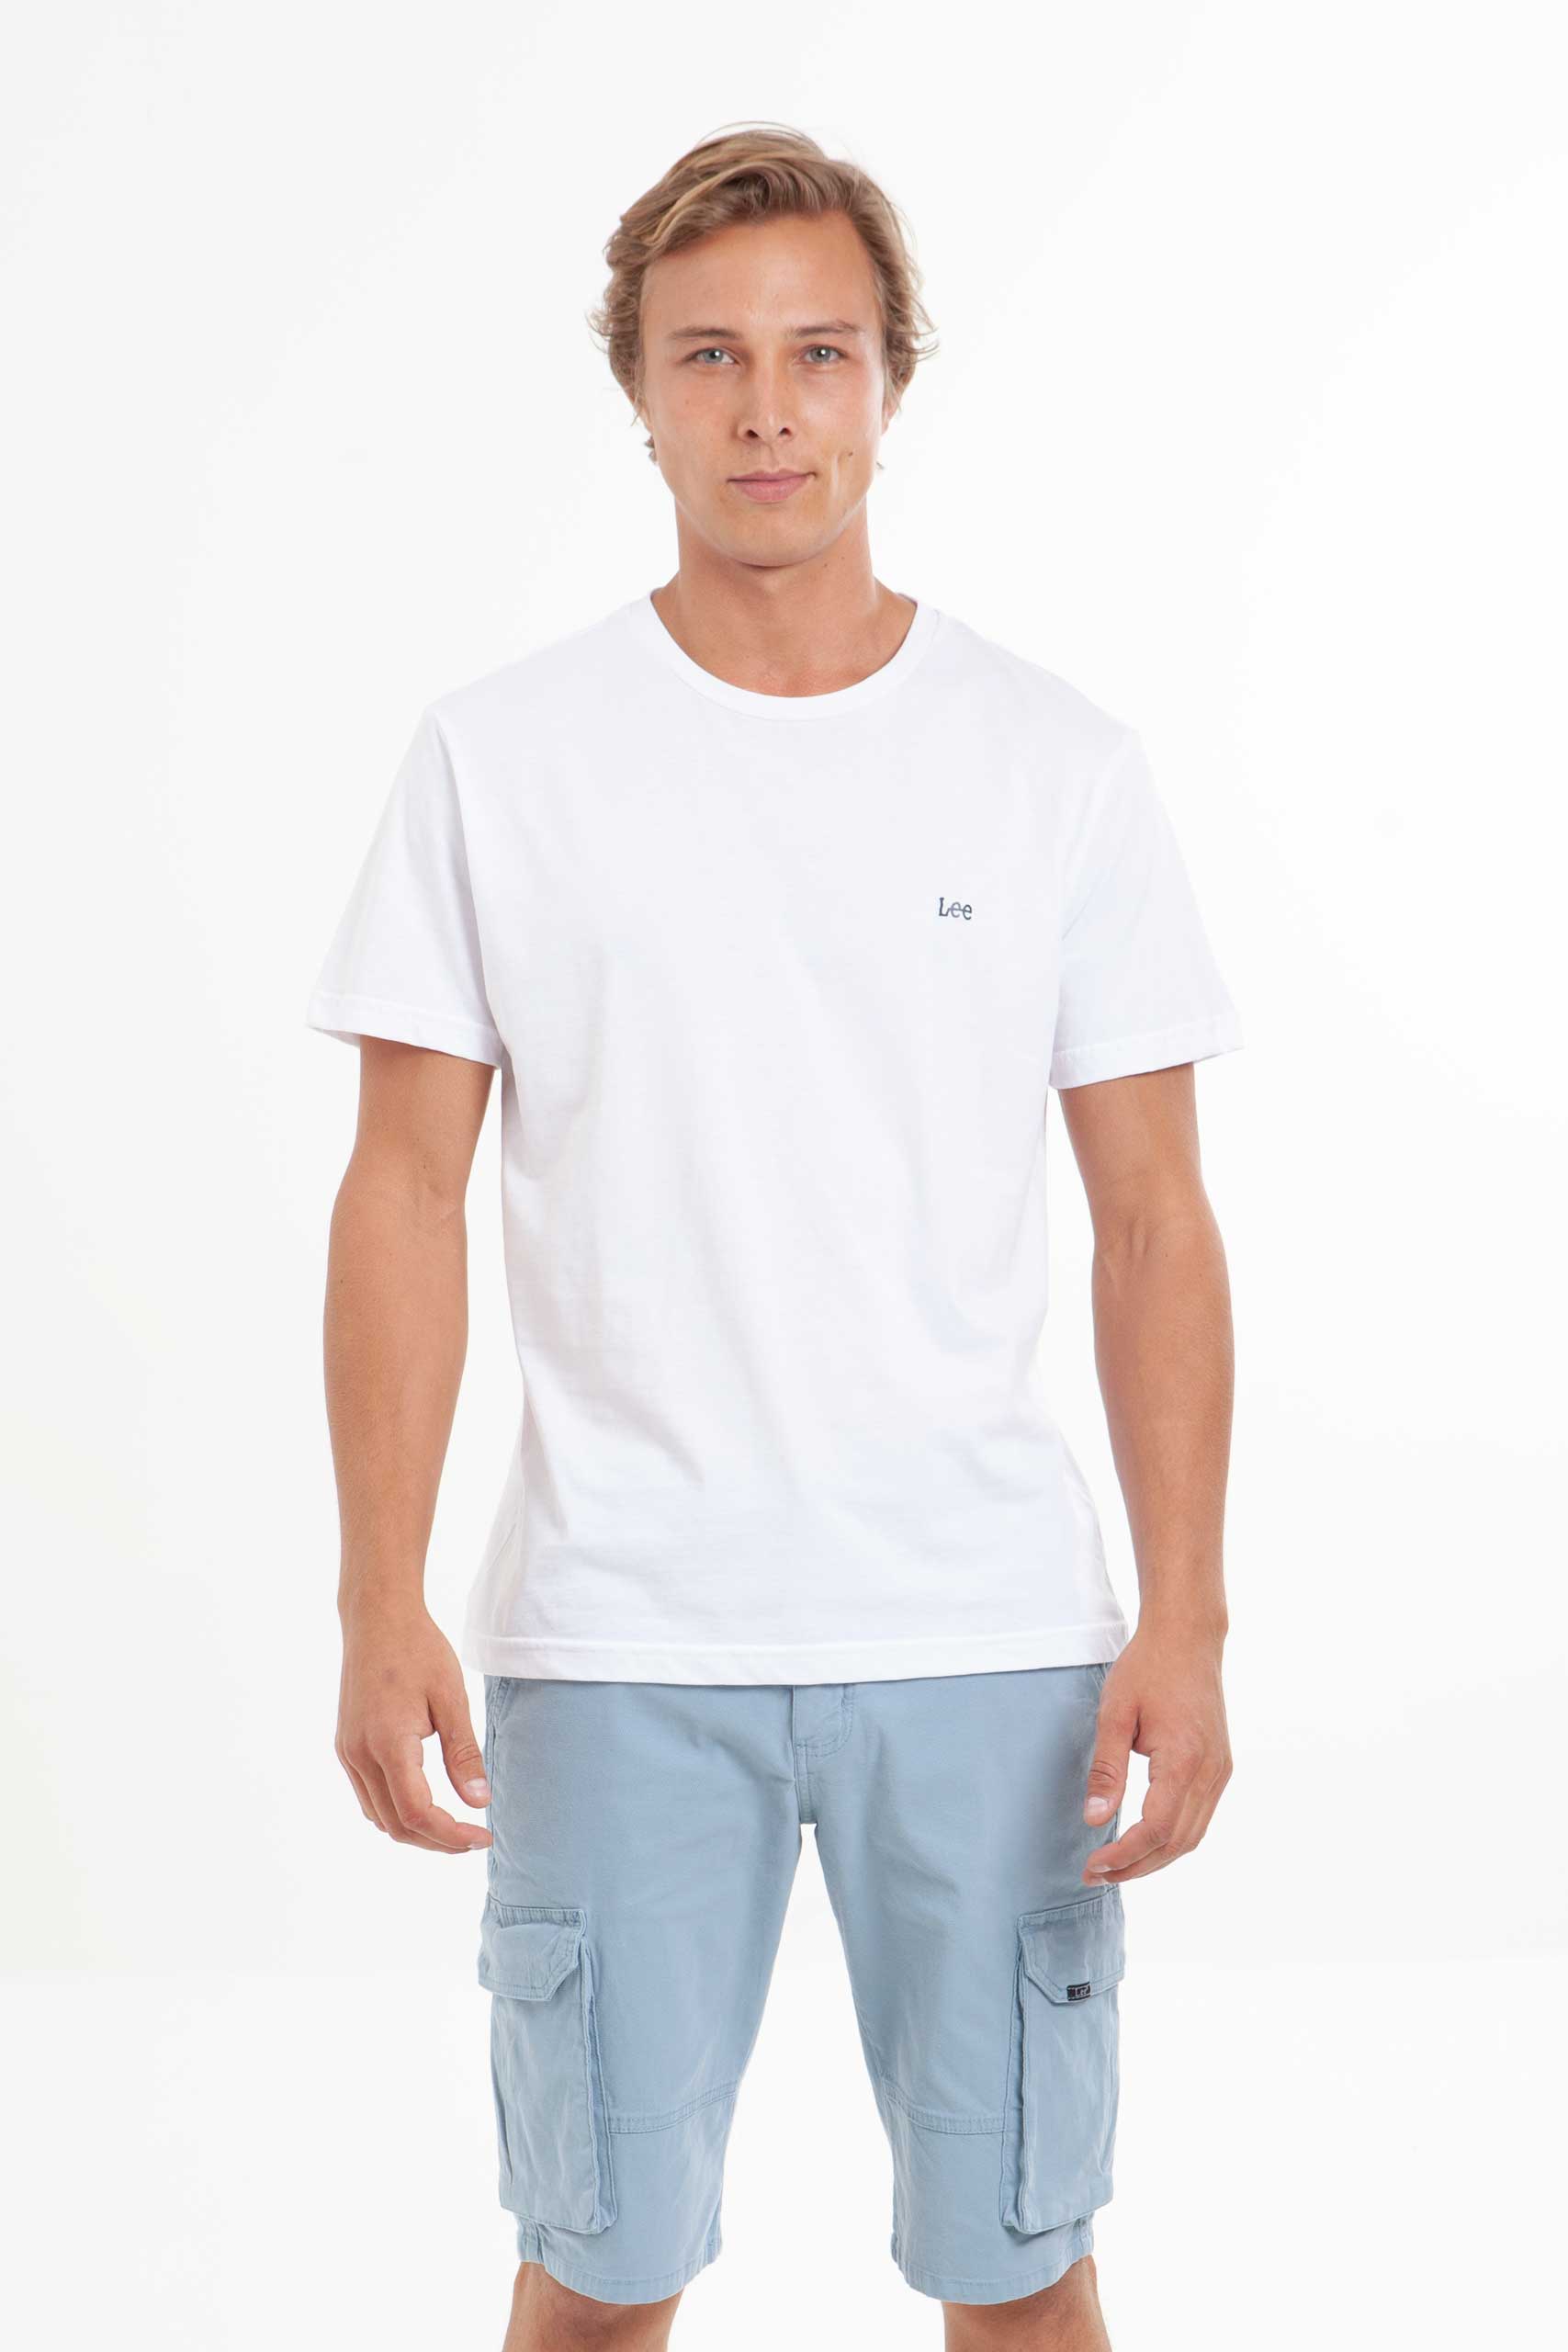 Vista frontal Camiseta Hombre Blanco marca Lee